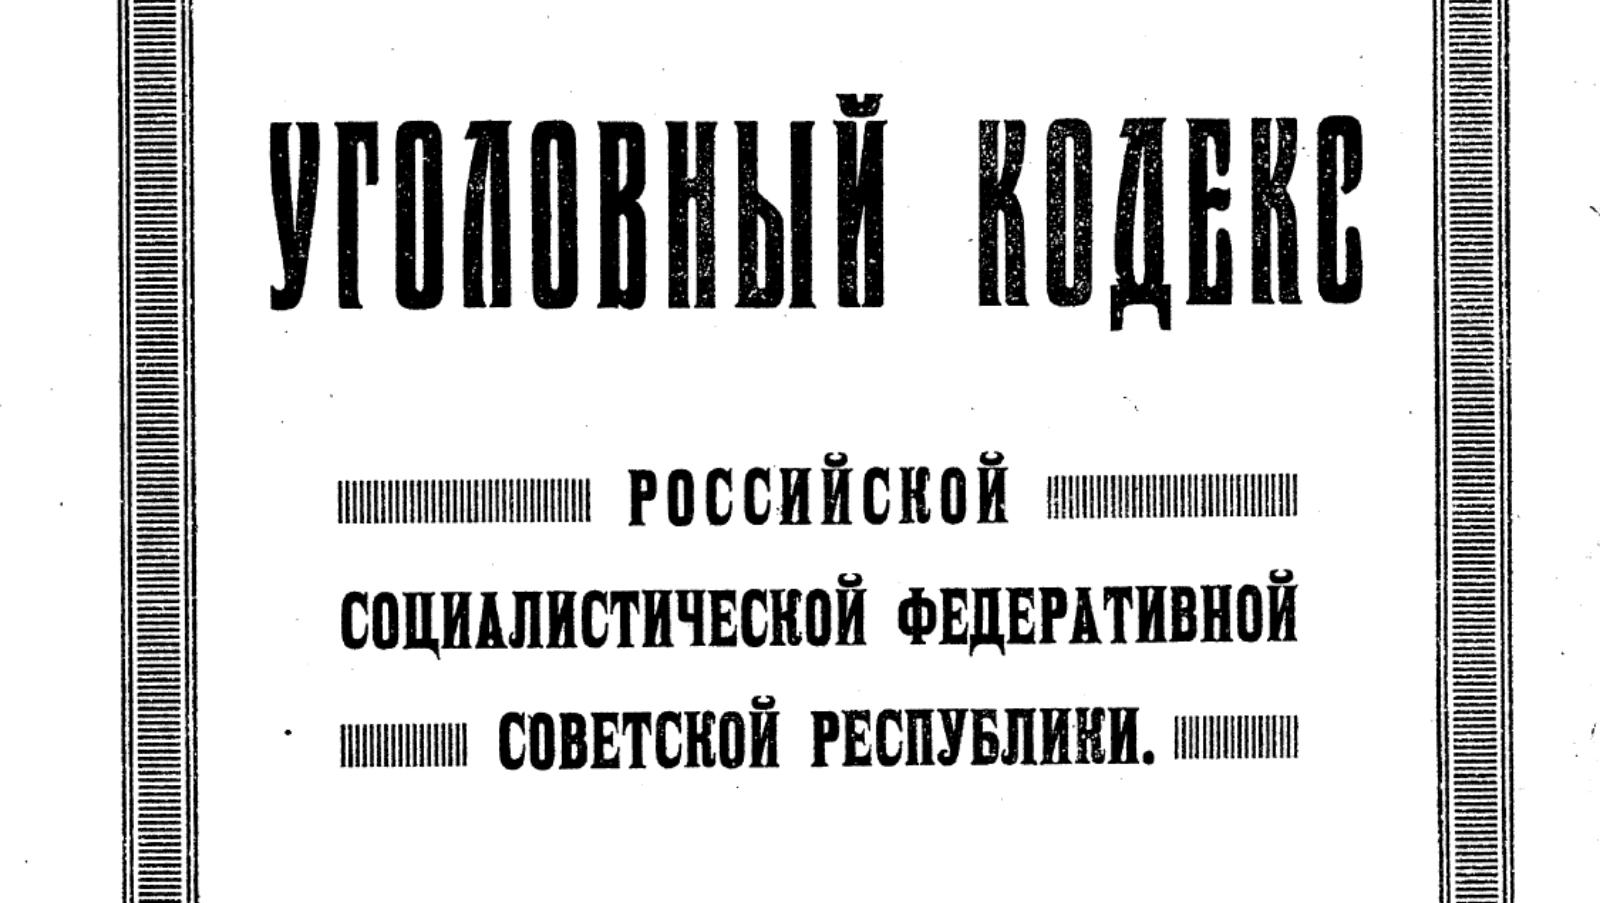 Уголовный кодекс РСФСР 1922 года.